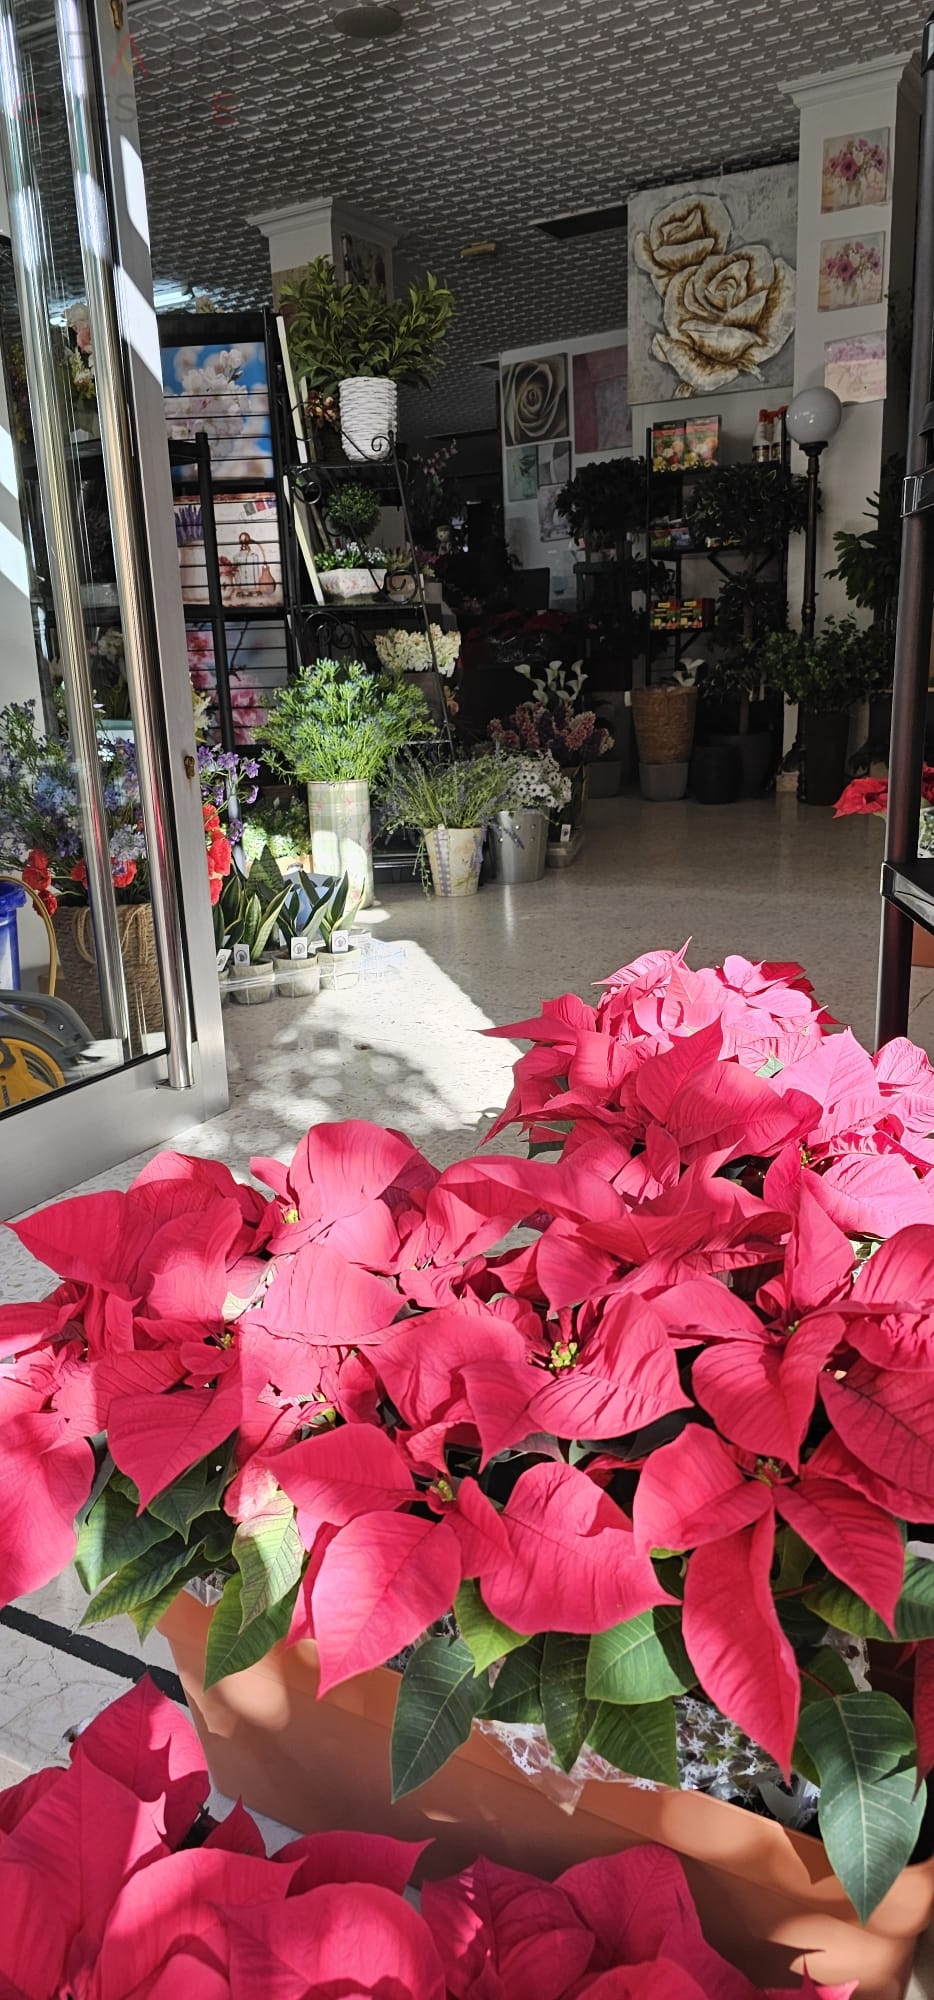 La mejor tienda de decoración navideña y jardines de Almendralejo Floristería LIs